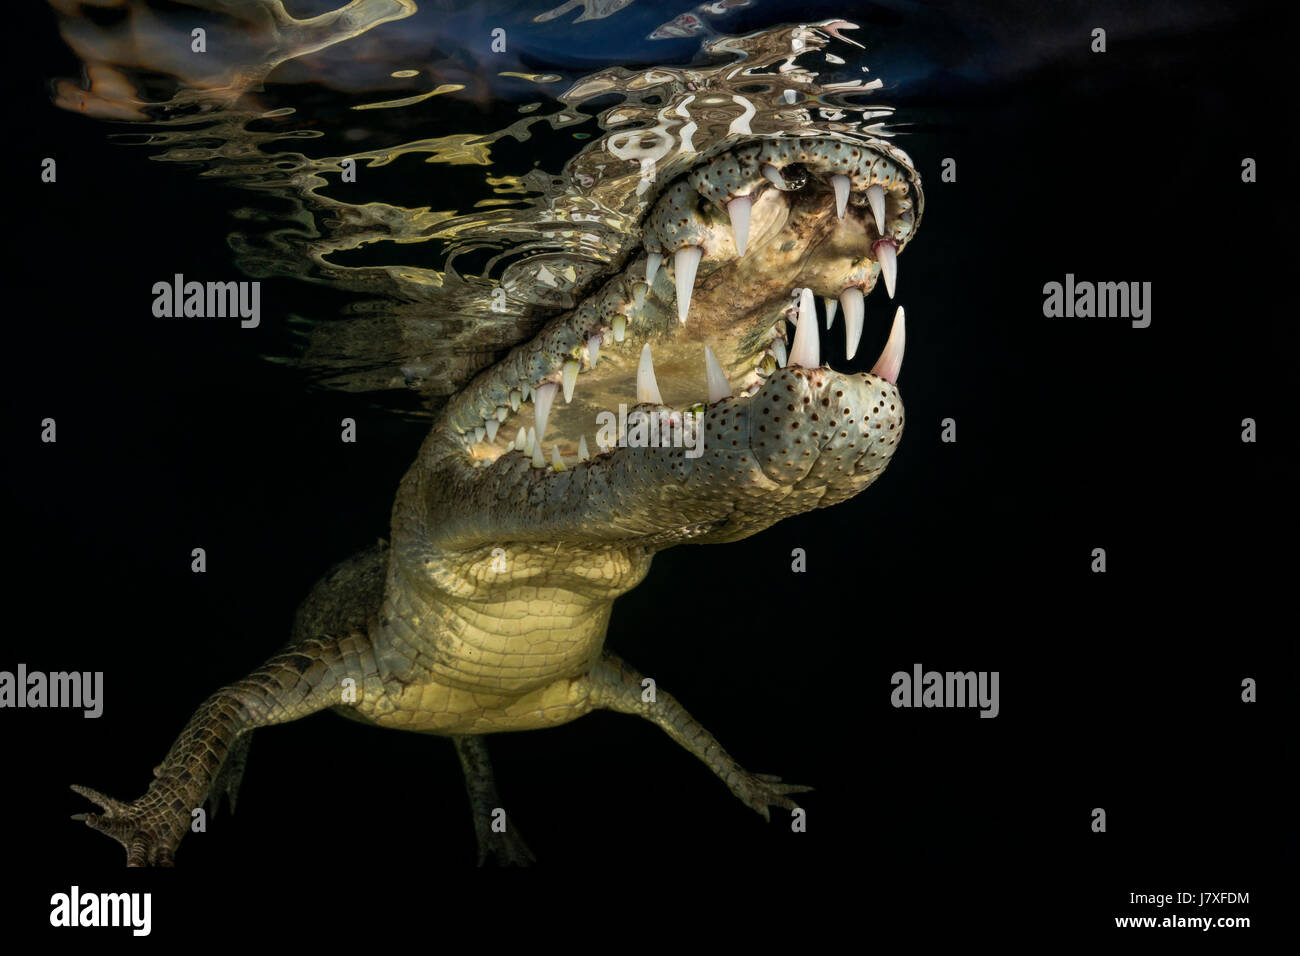 El cocodrilo americano Crocodylus acutus, Jardines de la Reina, Cuba Foto de stock